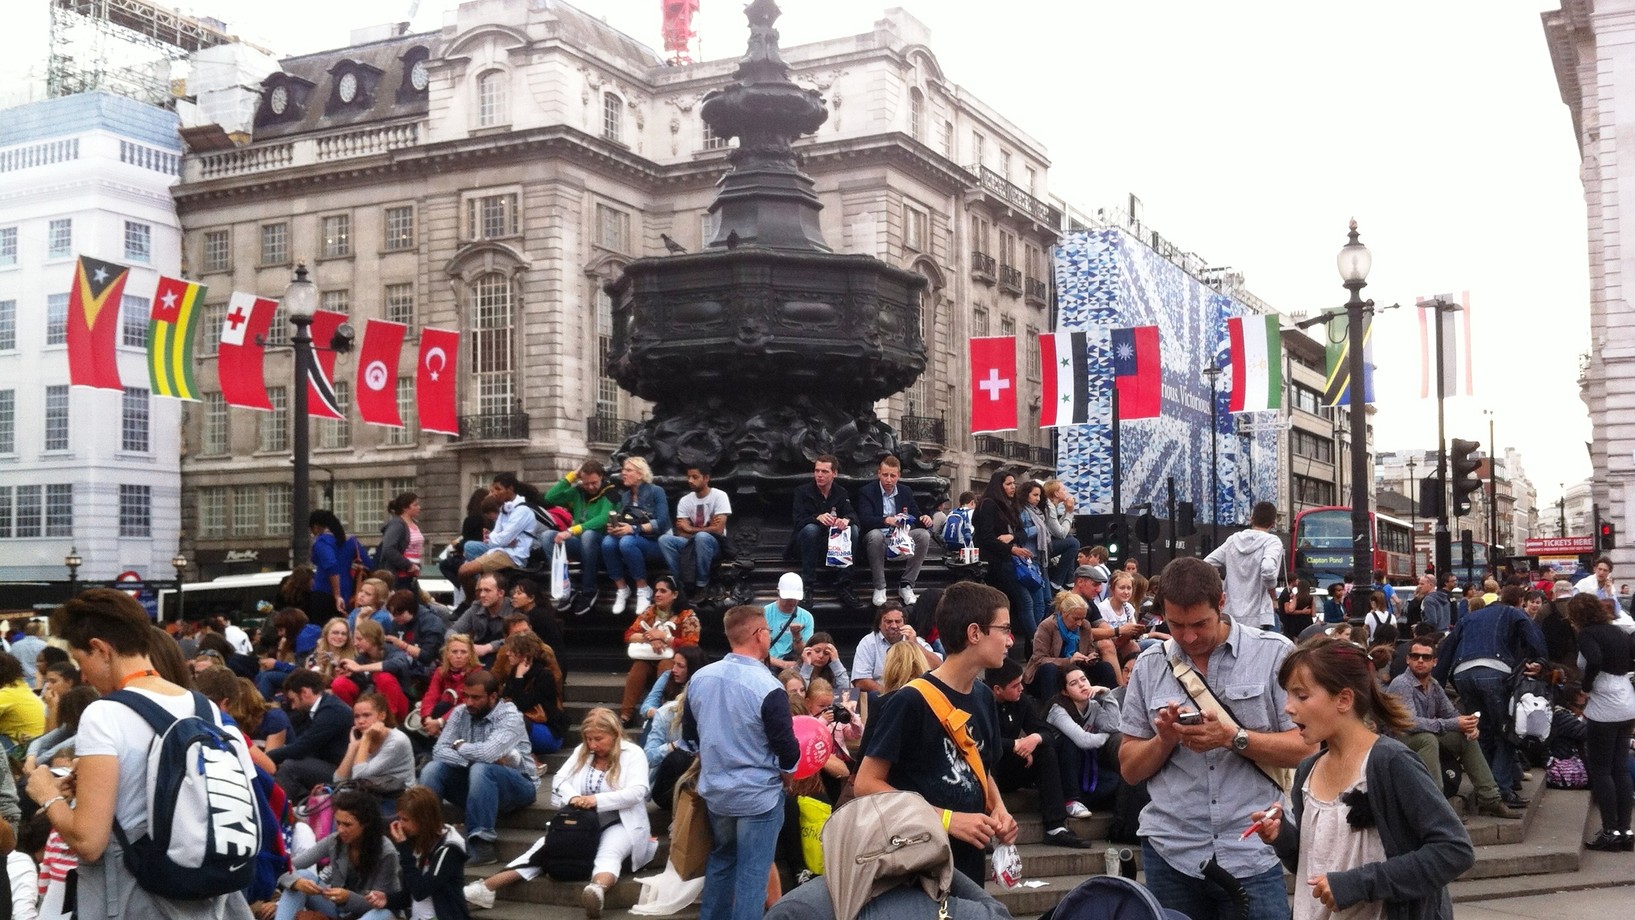 Letzte Stunden auf dem Piccadilly Circus im Zentrum von London - mit gut sichtbarer Schweizer Flagge. Die Olympischen Spiele haben England ein hervorragendes Zeugnis ausgestellt. Die Engländer haben einmal mehr bewiesen, dass sie das freundlichste Volk Europas sind. (Foto: Journal 21)